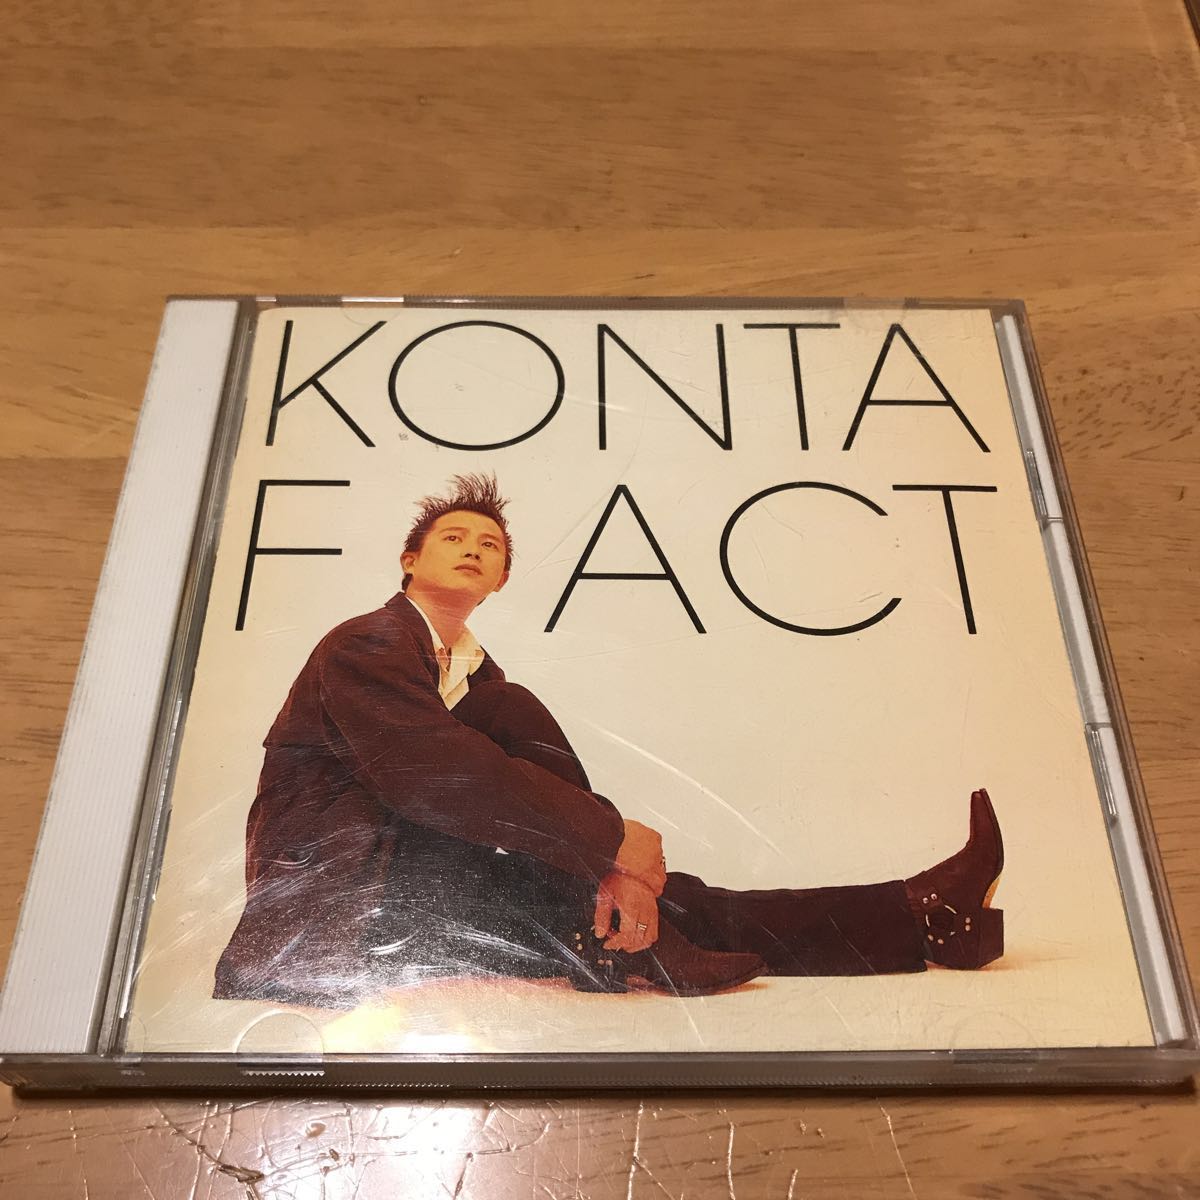 FACT|KONTA